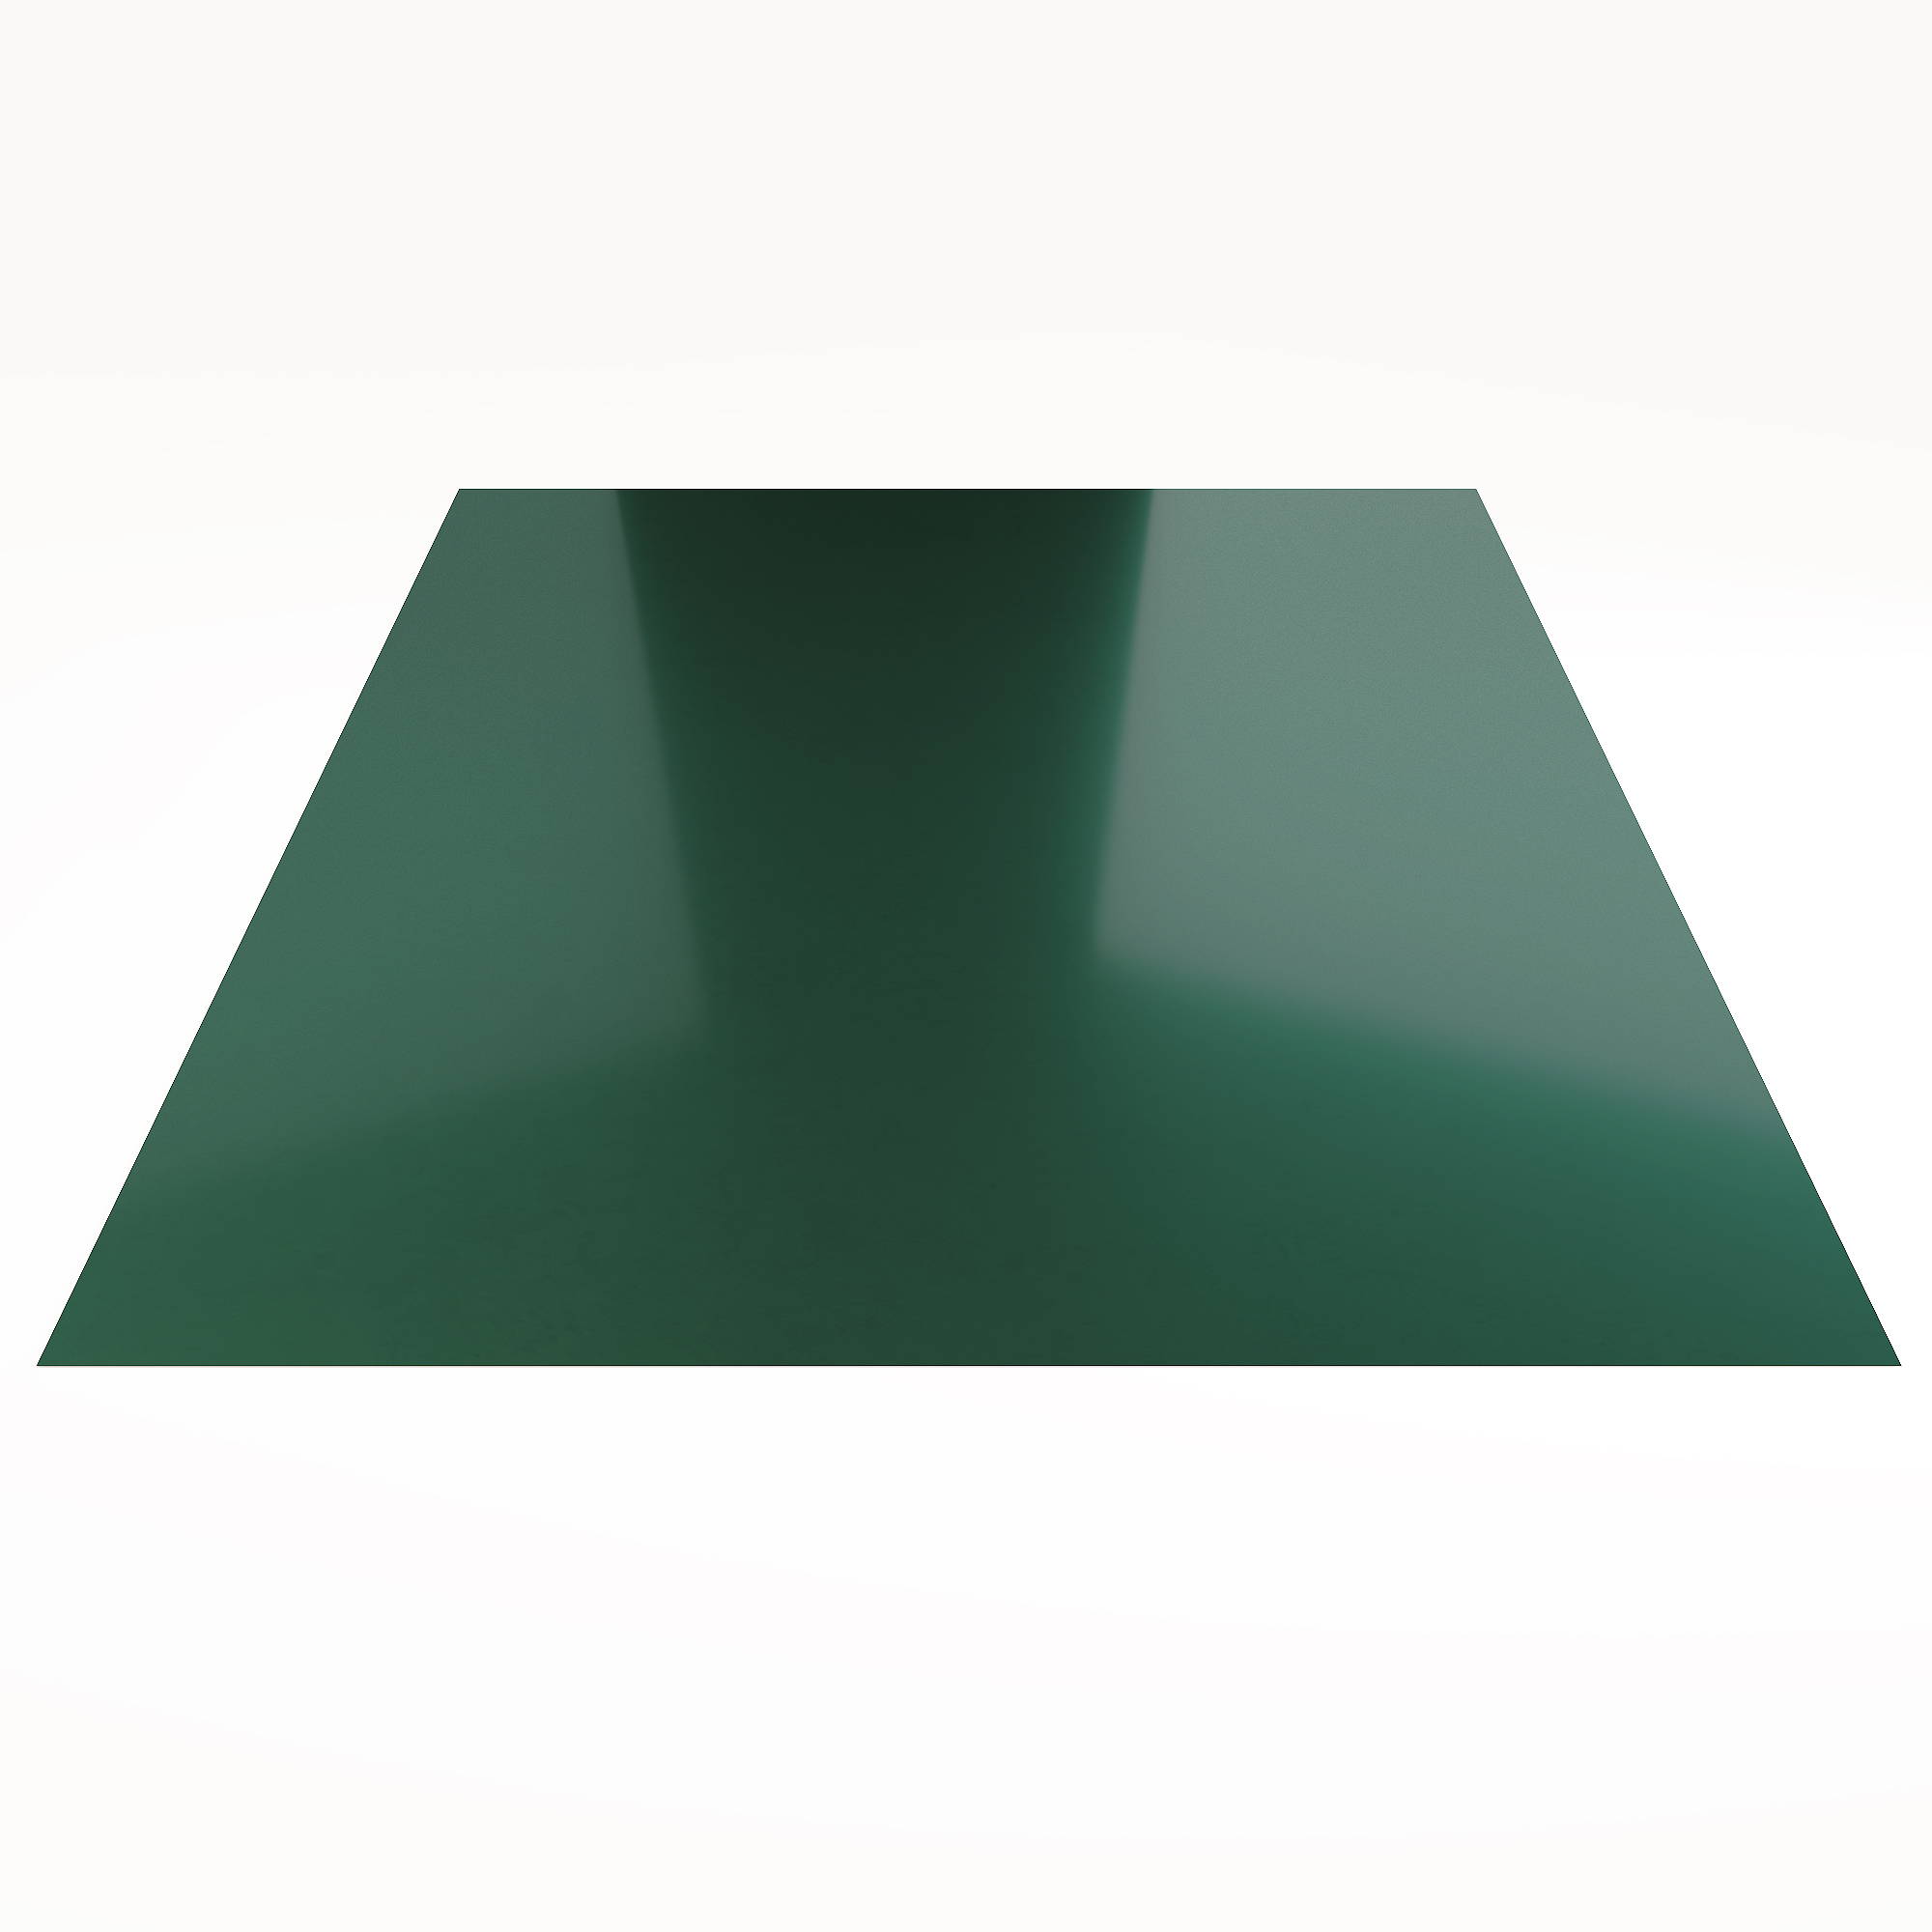 Гладкий лист Гладкий полиэстер RAL 6005 (Зелёный мох) 1800*1250*0,45 односторонний ламинированный